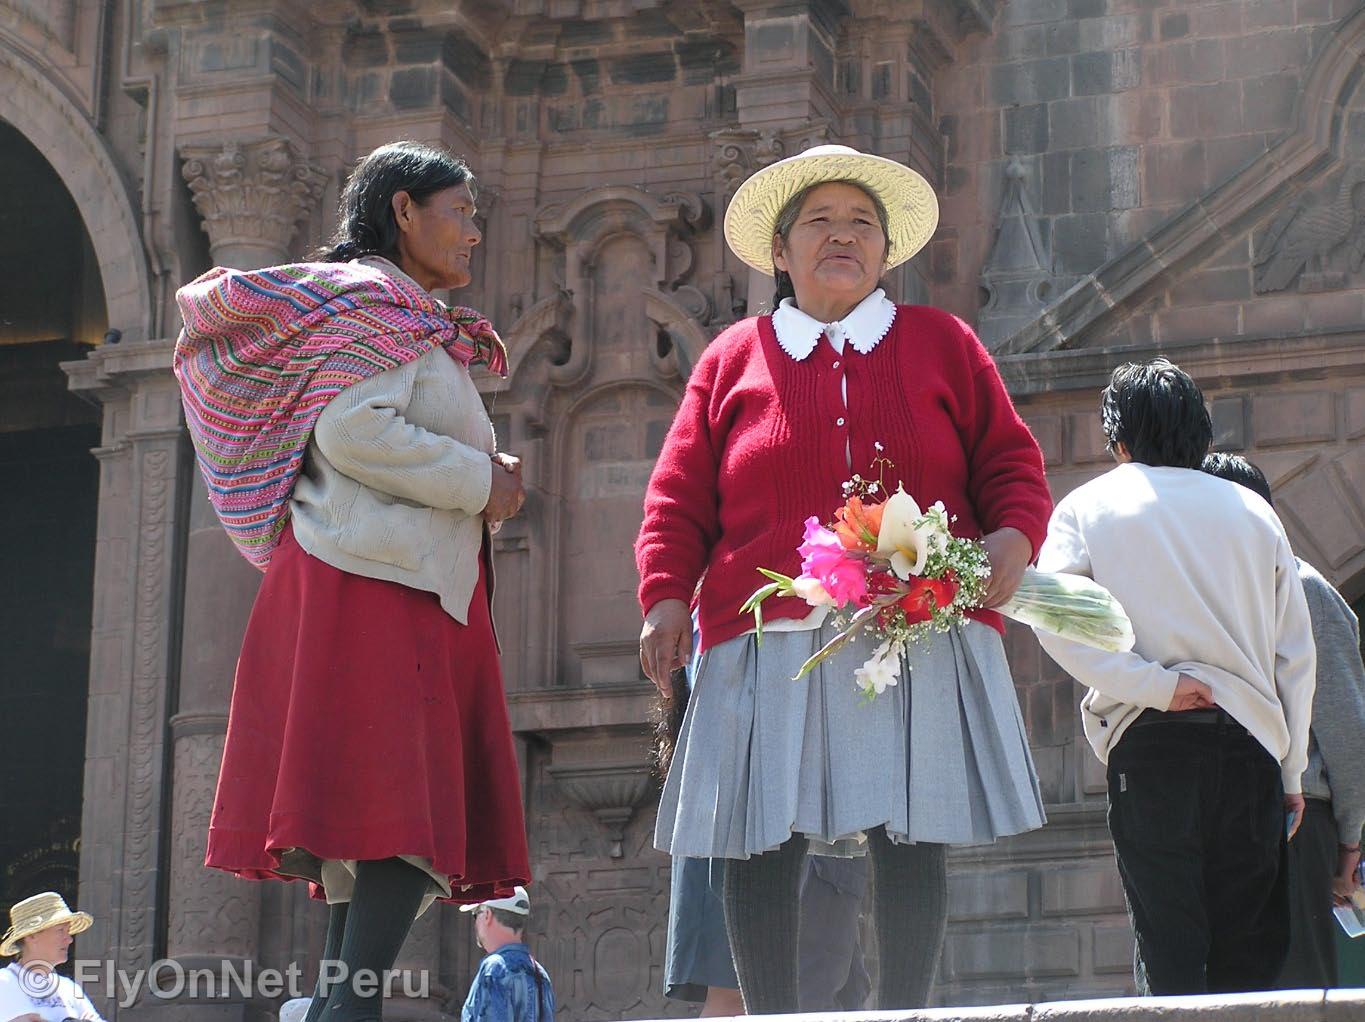 Álbum de fotos: Mujeres de Cusco